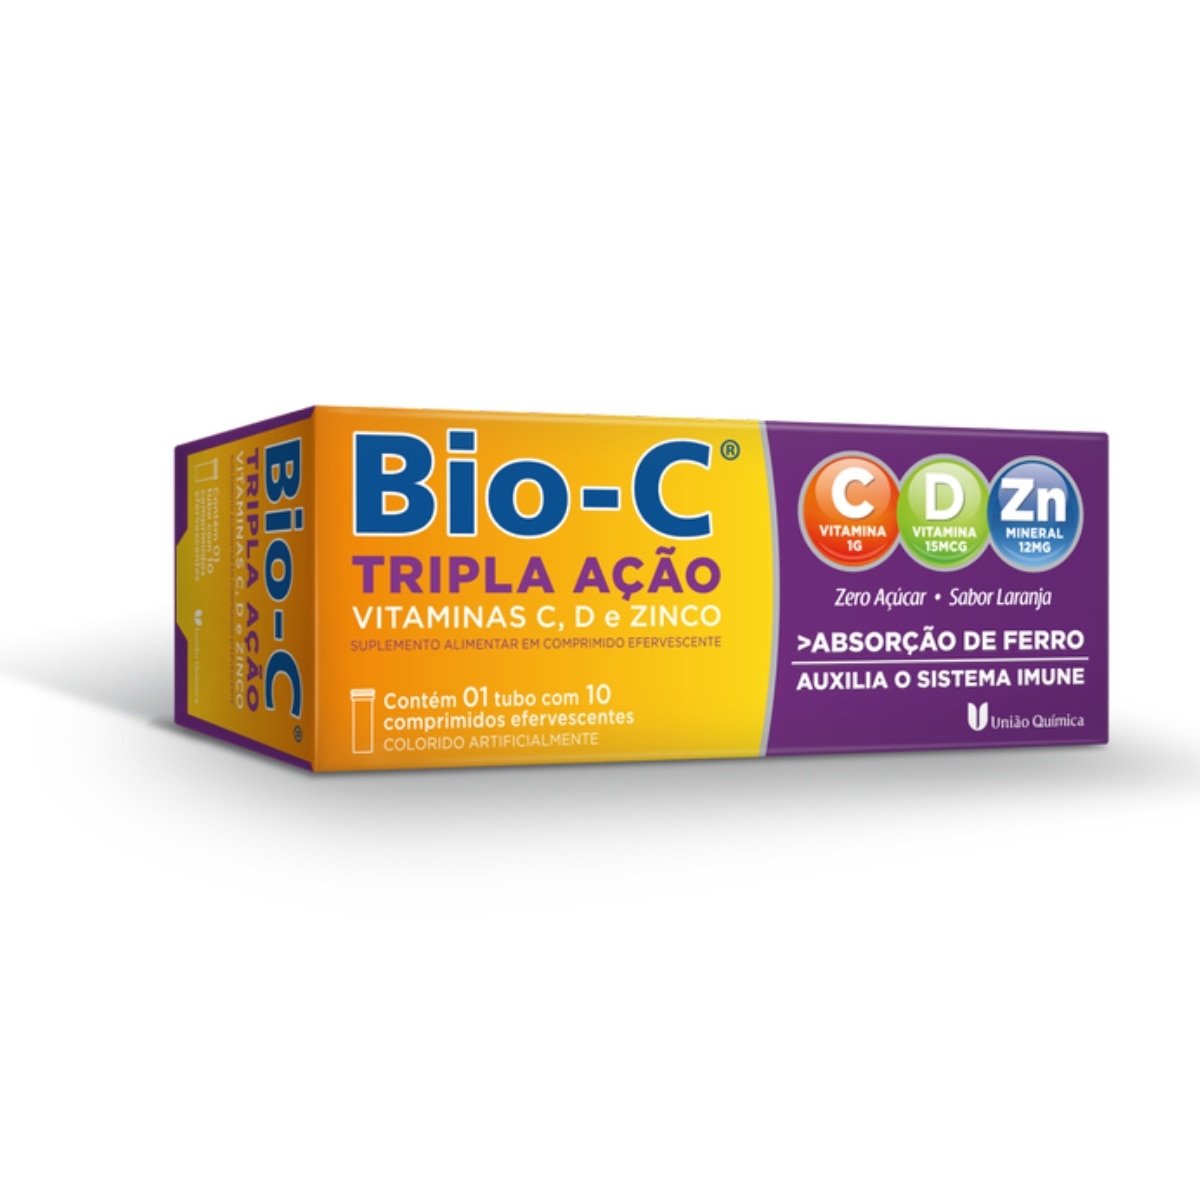 Bio-C Tripla Acao Sabor Laranja 10 Comprimidos Efervescentes